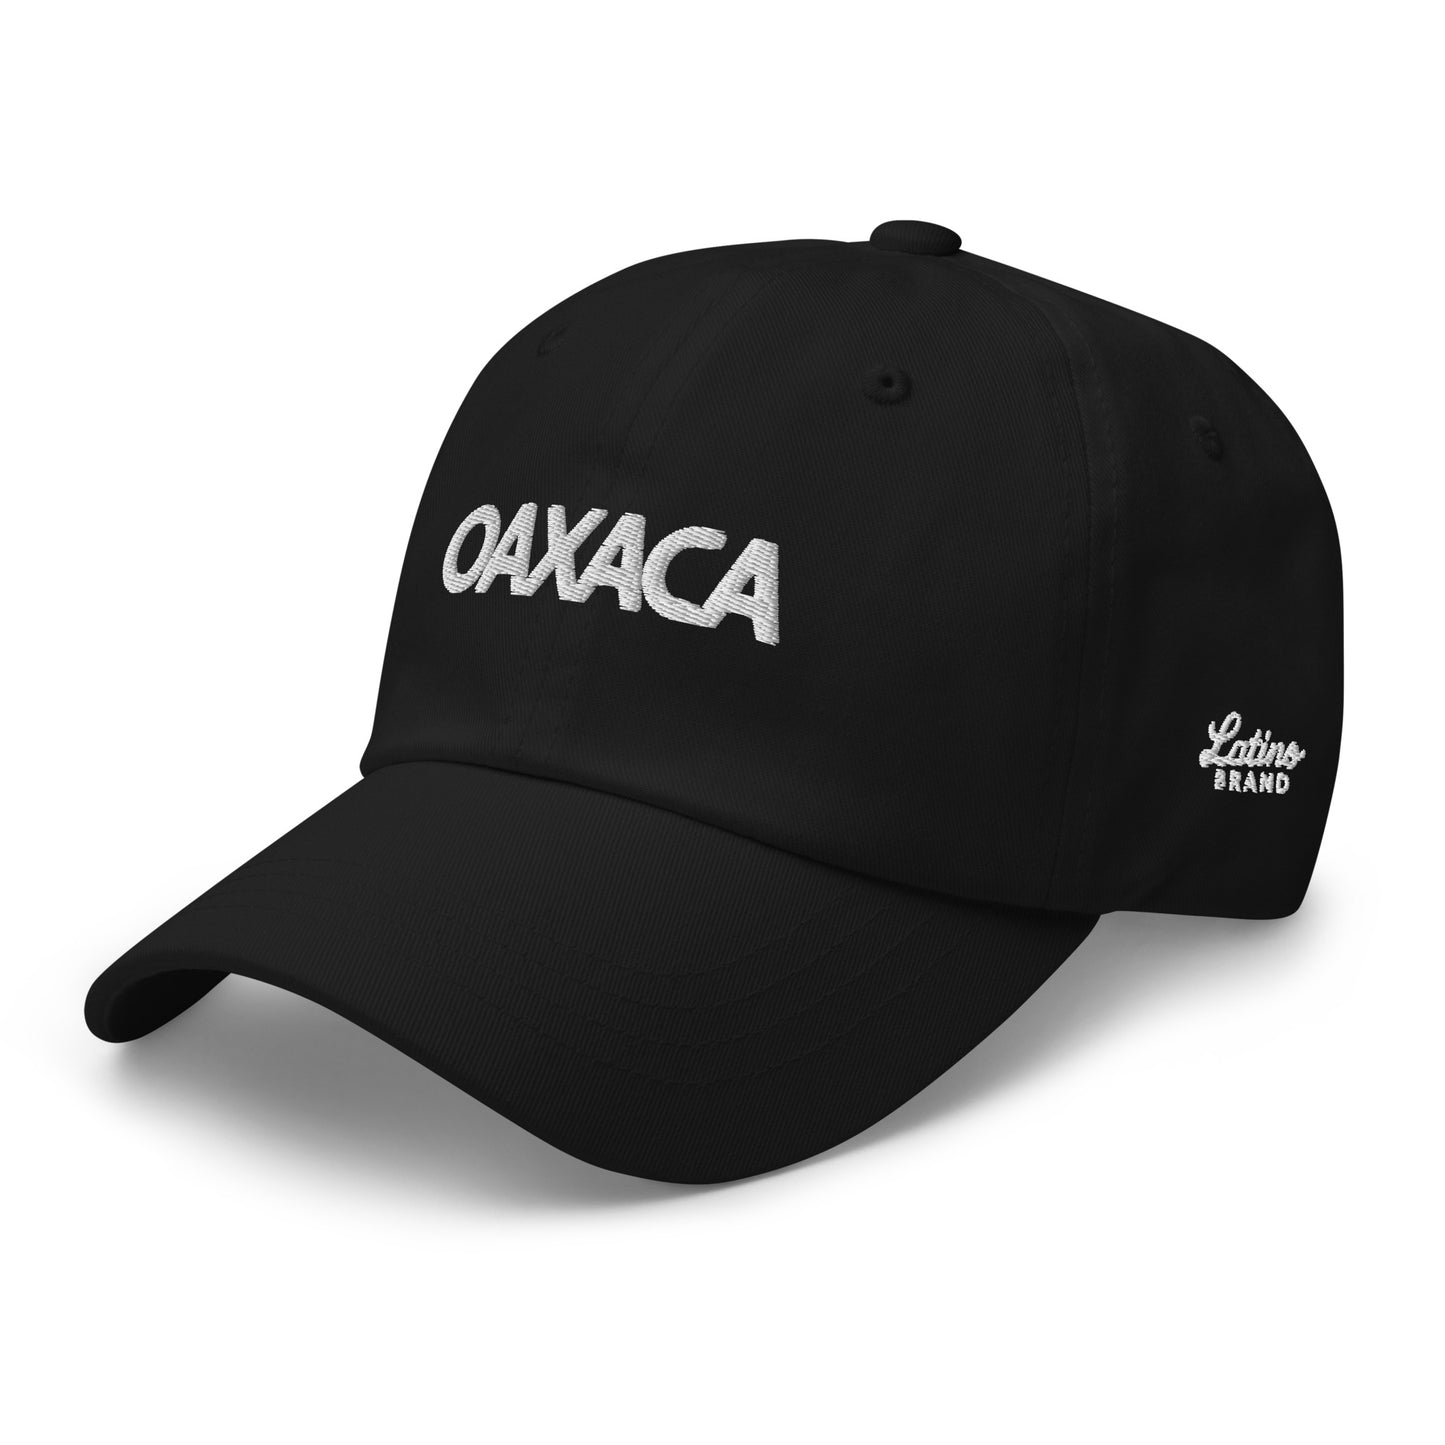 🇲🇽 Oaxaca Dad Hat